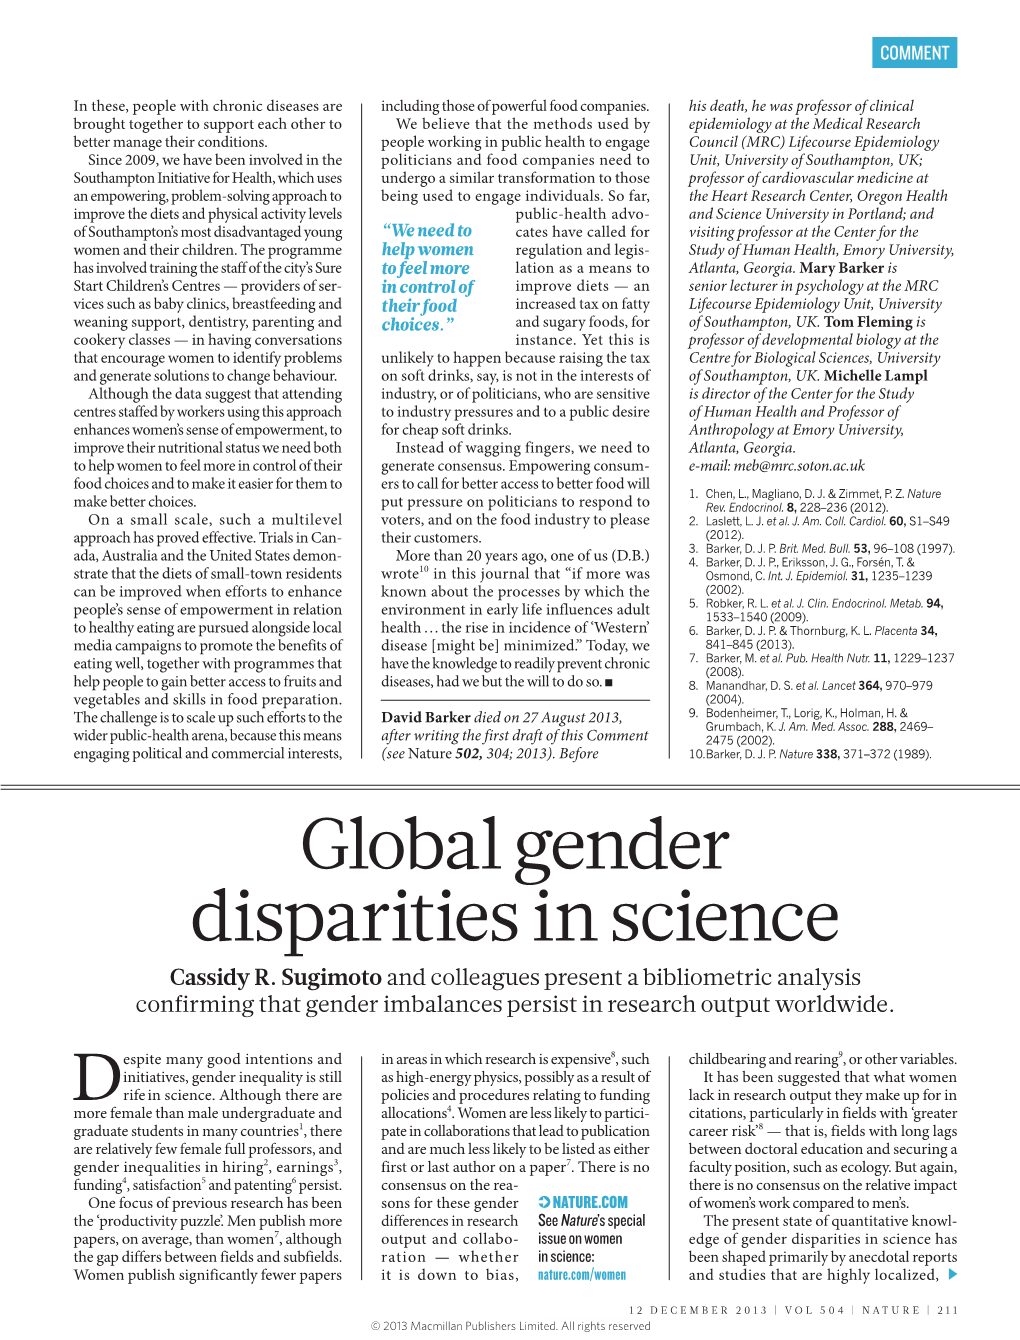 Global Gender Disparities in Science Cassidy R